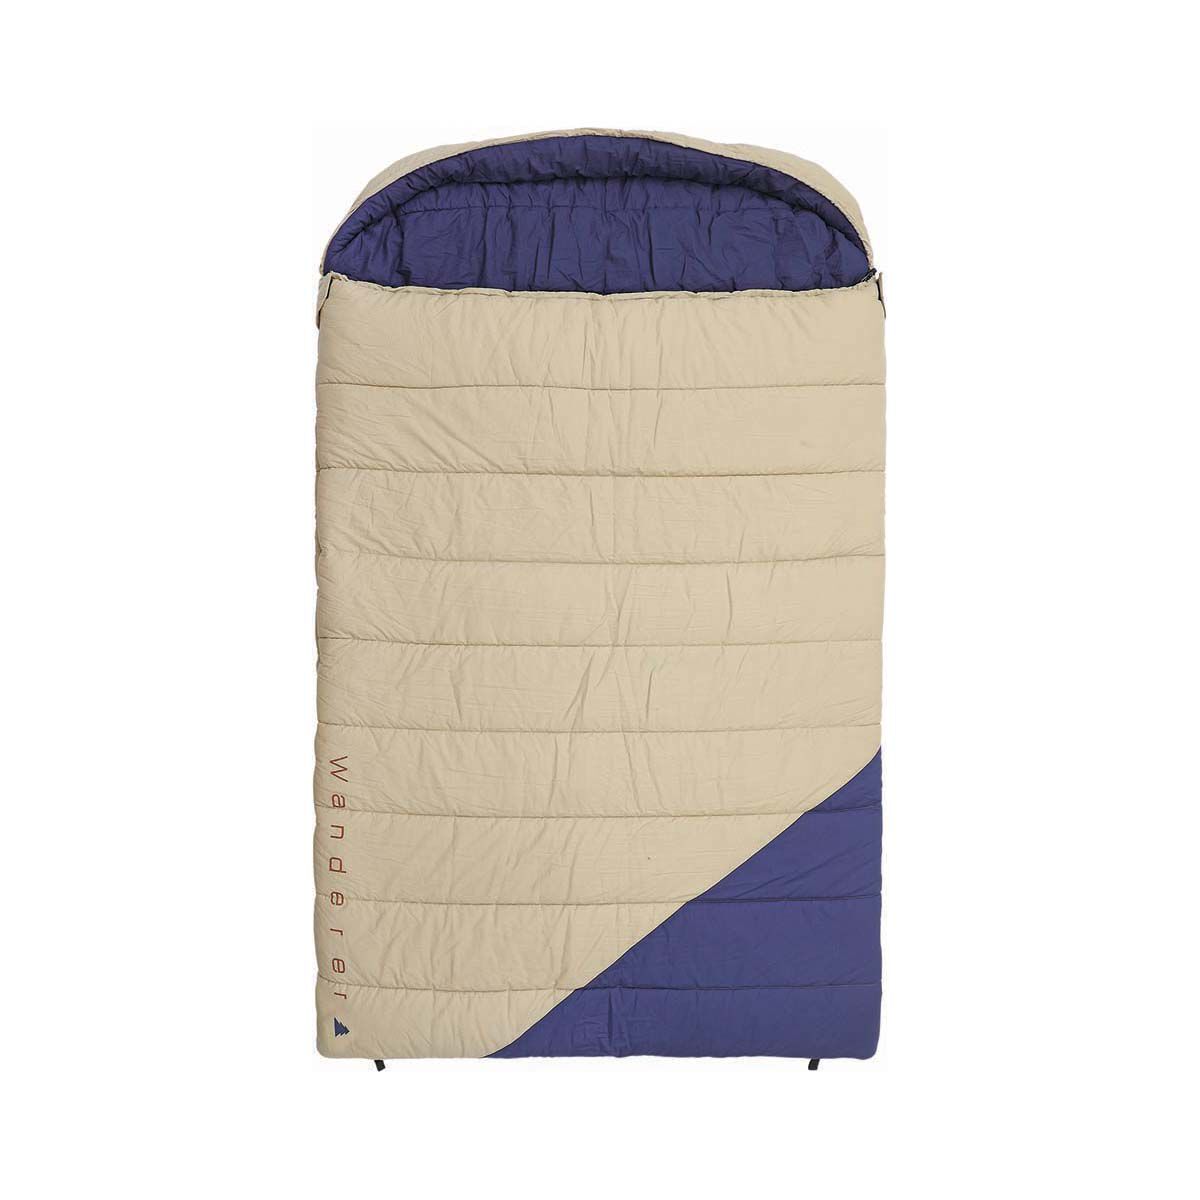 Kelty Tru.Comfort Doublewide 20 Double Sleeping Bag | REI Co-op